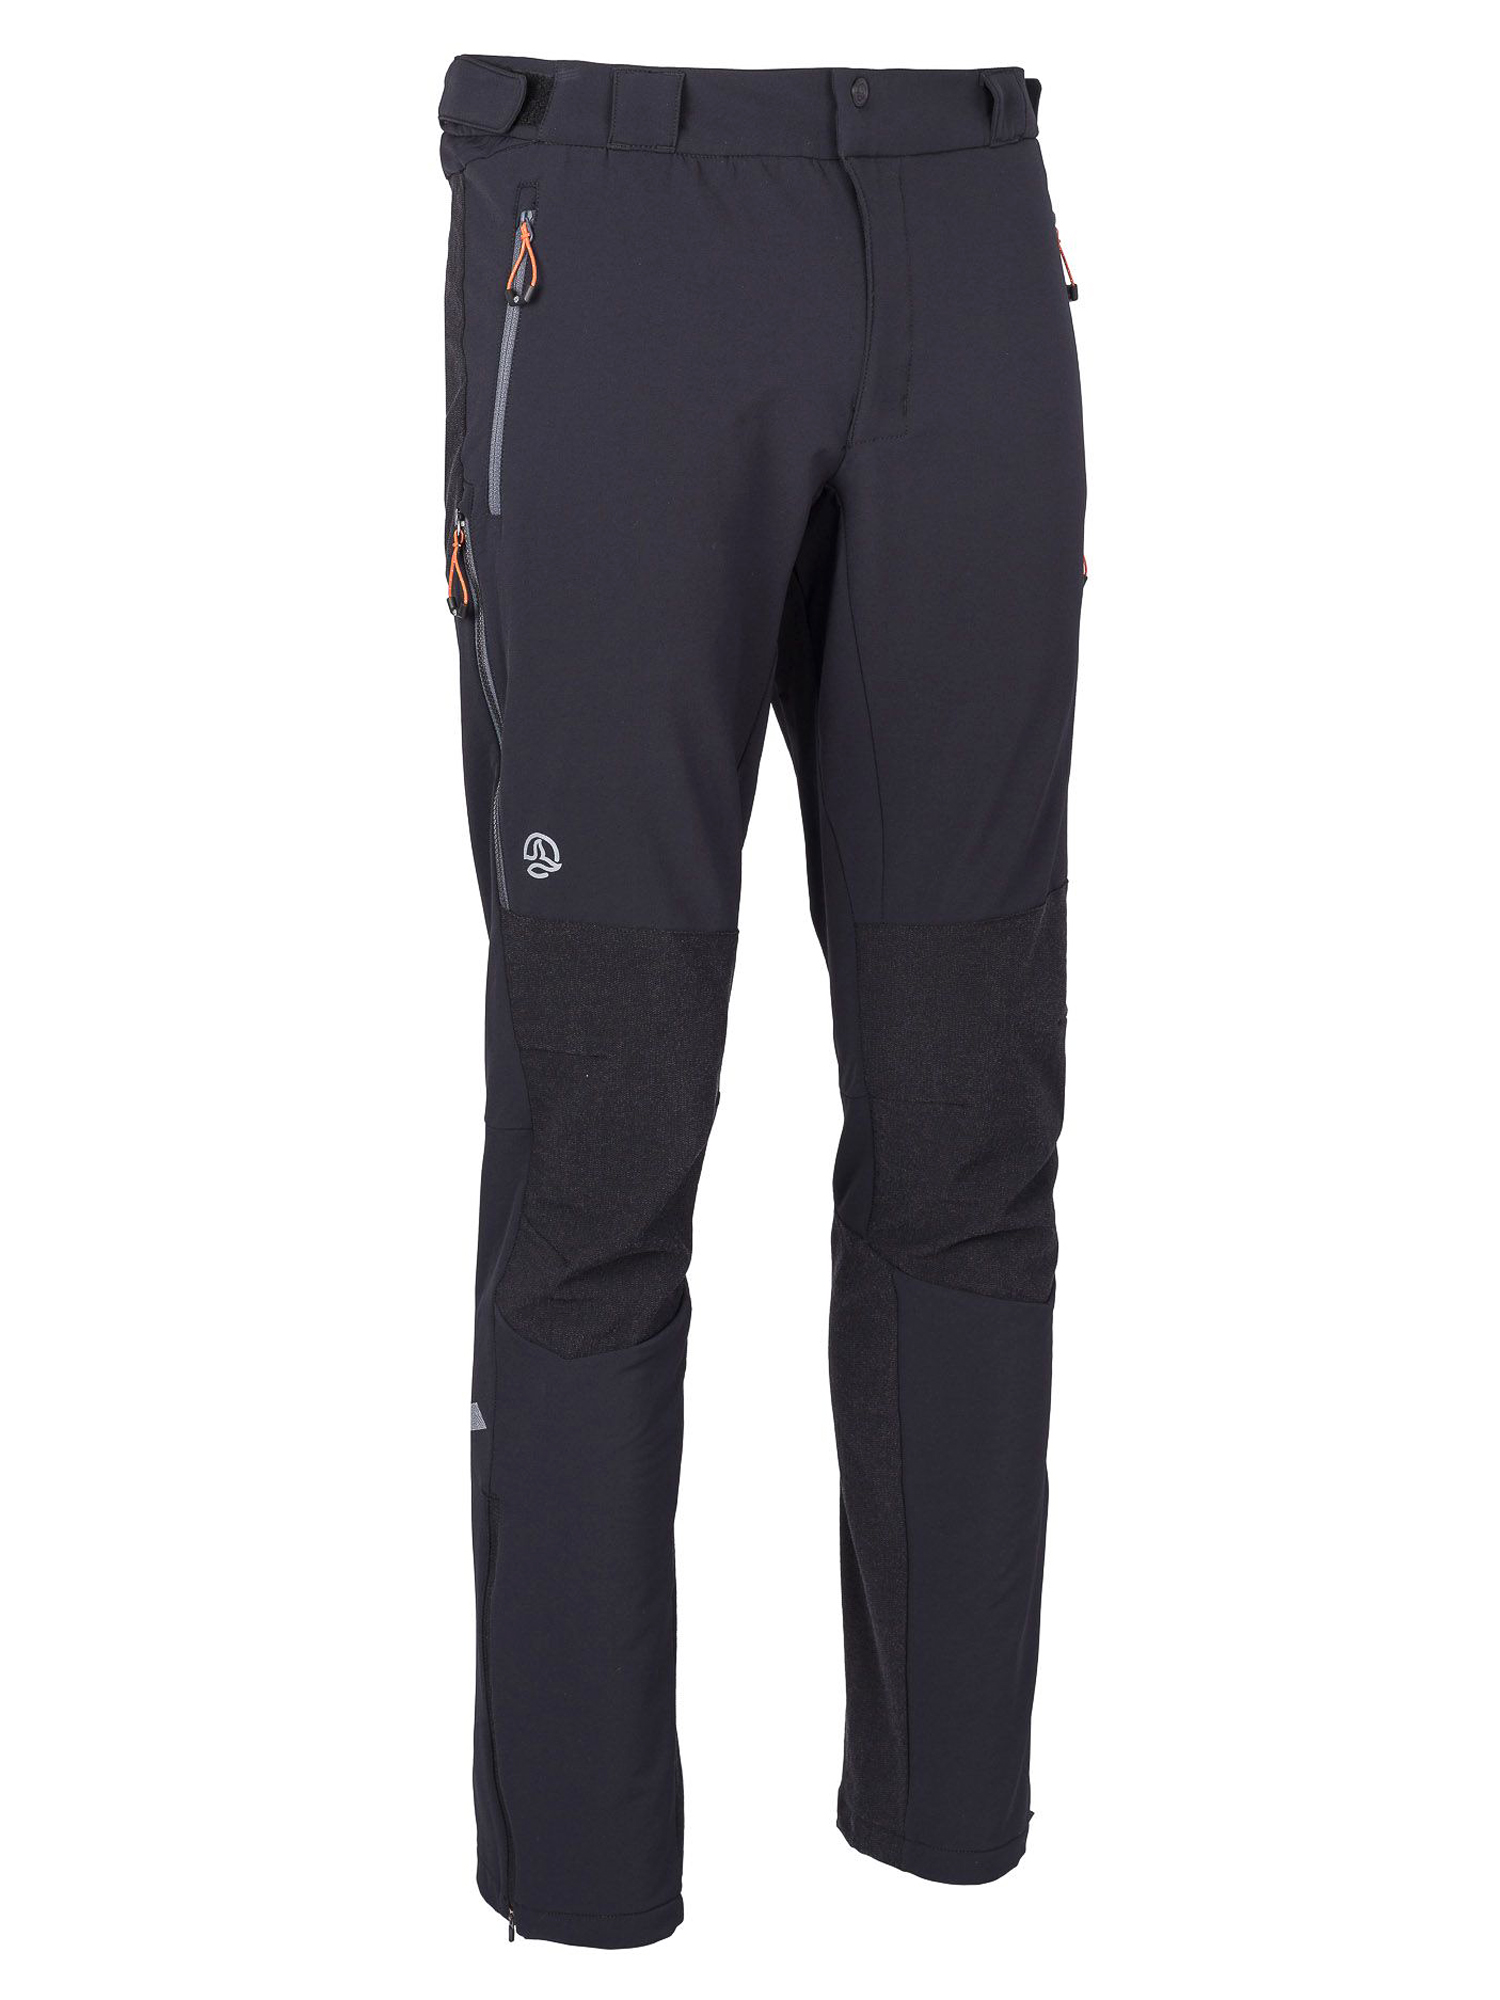 Спортивные брюки мужские Ternua Elbrus Pt M черные XL